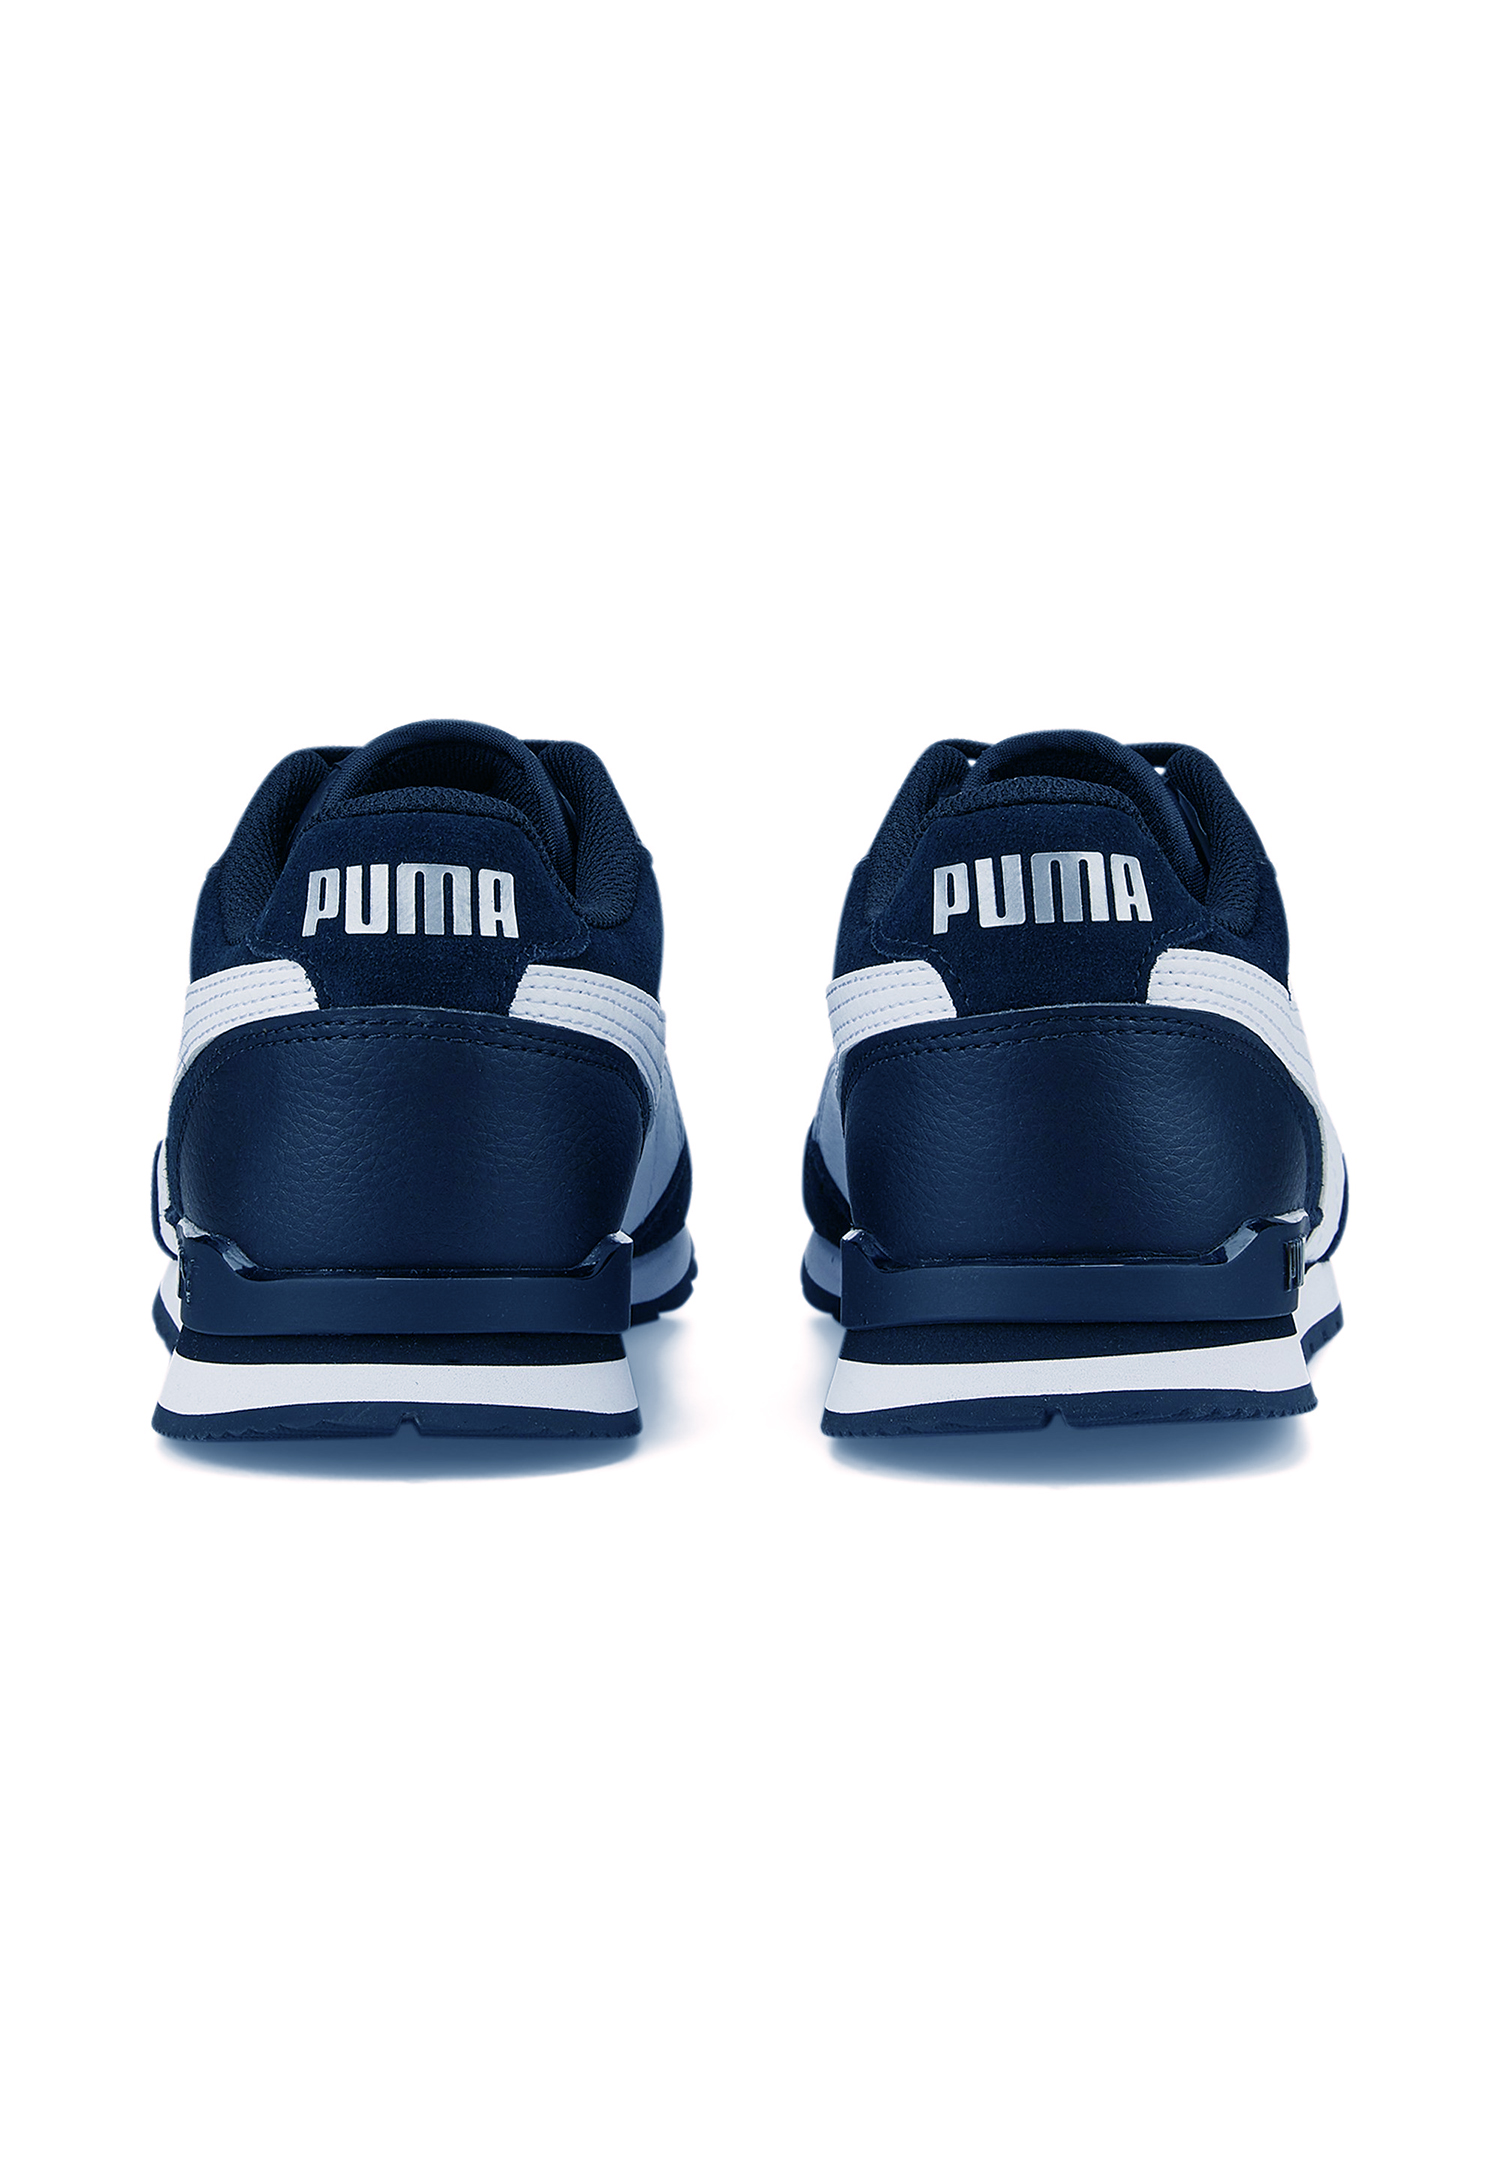 Puma ST Runner v3 SD Sneaker Schuhe 387646 03 Herren Schuhe blau